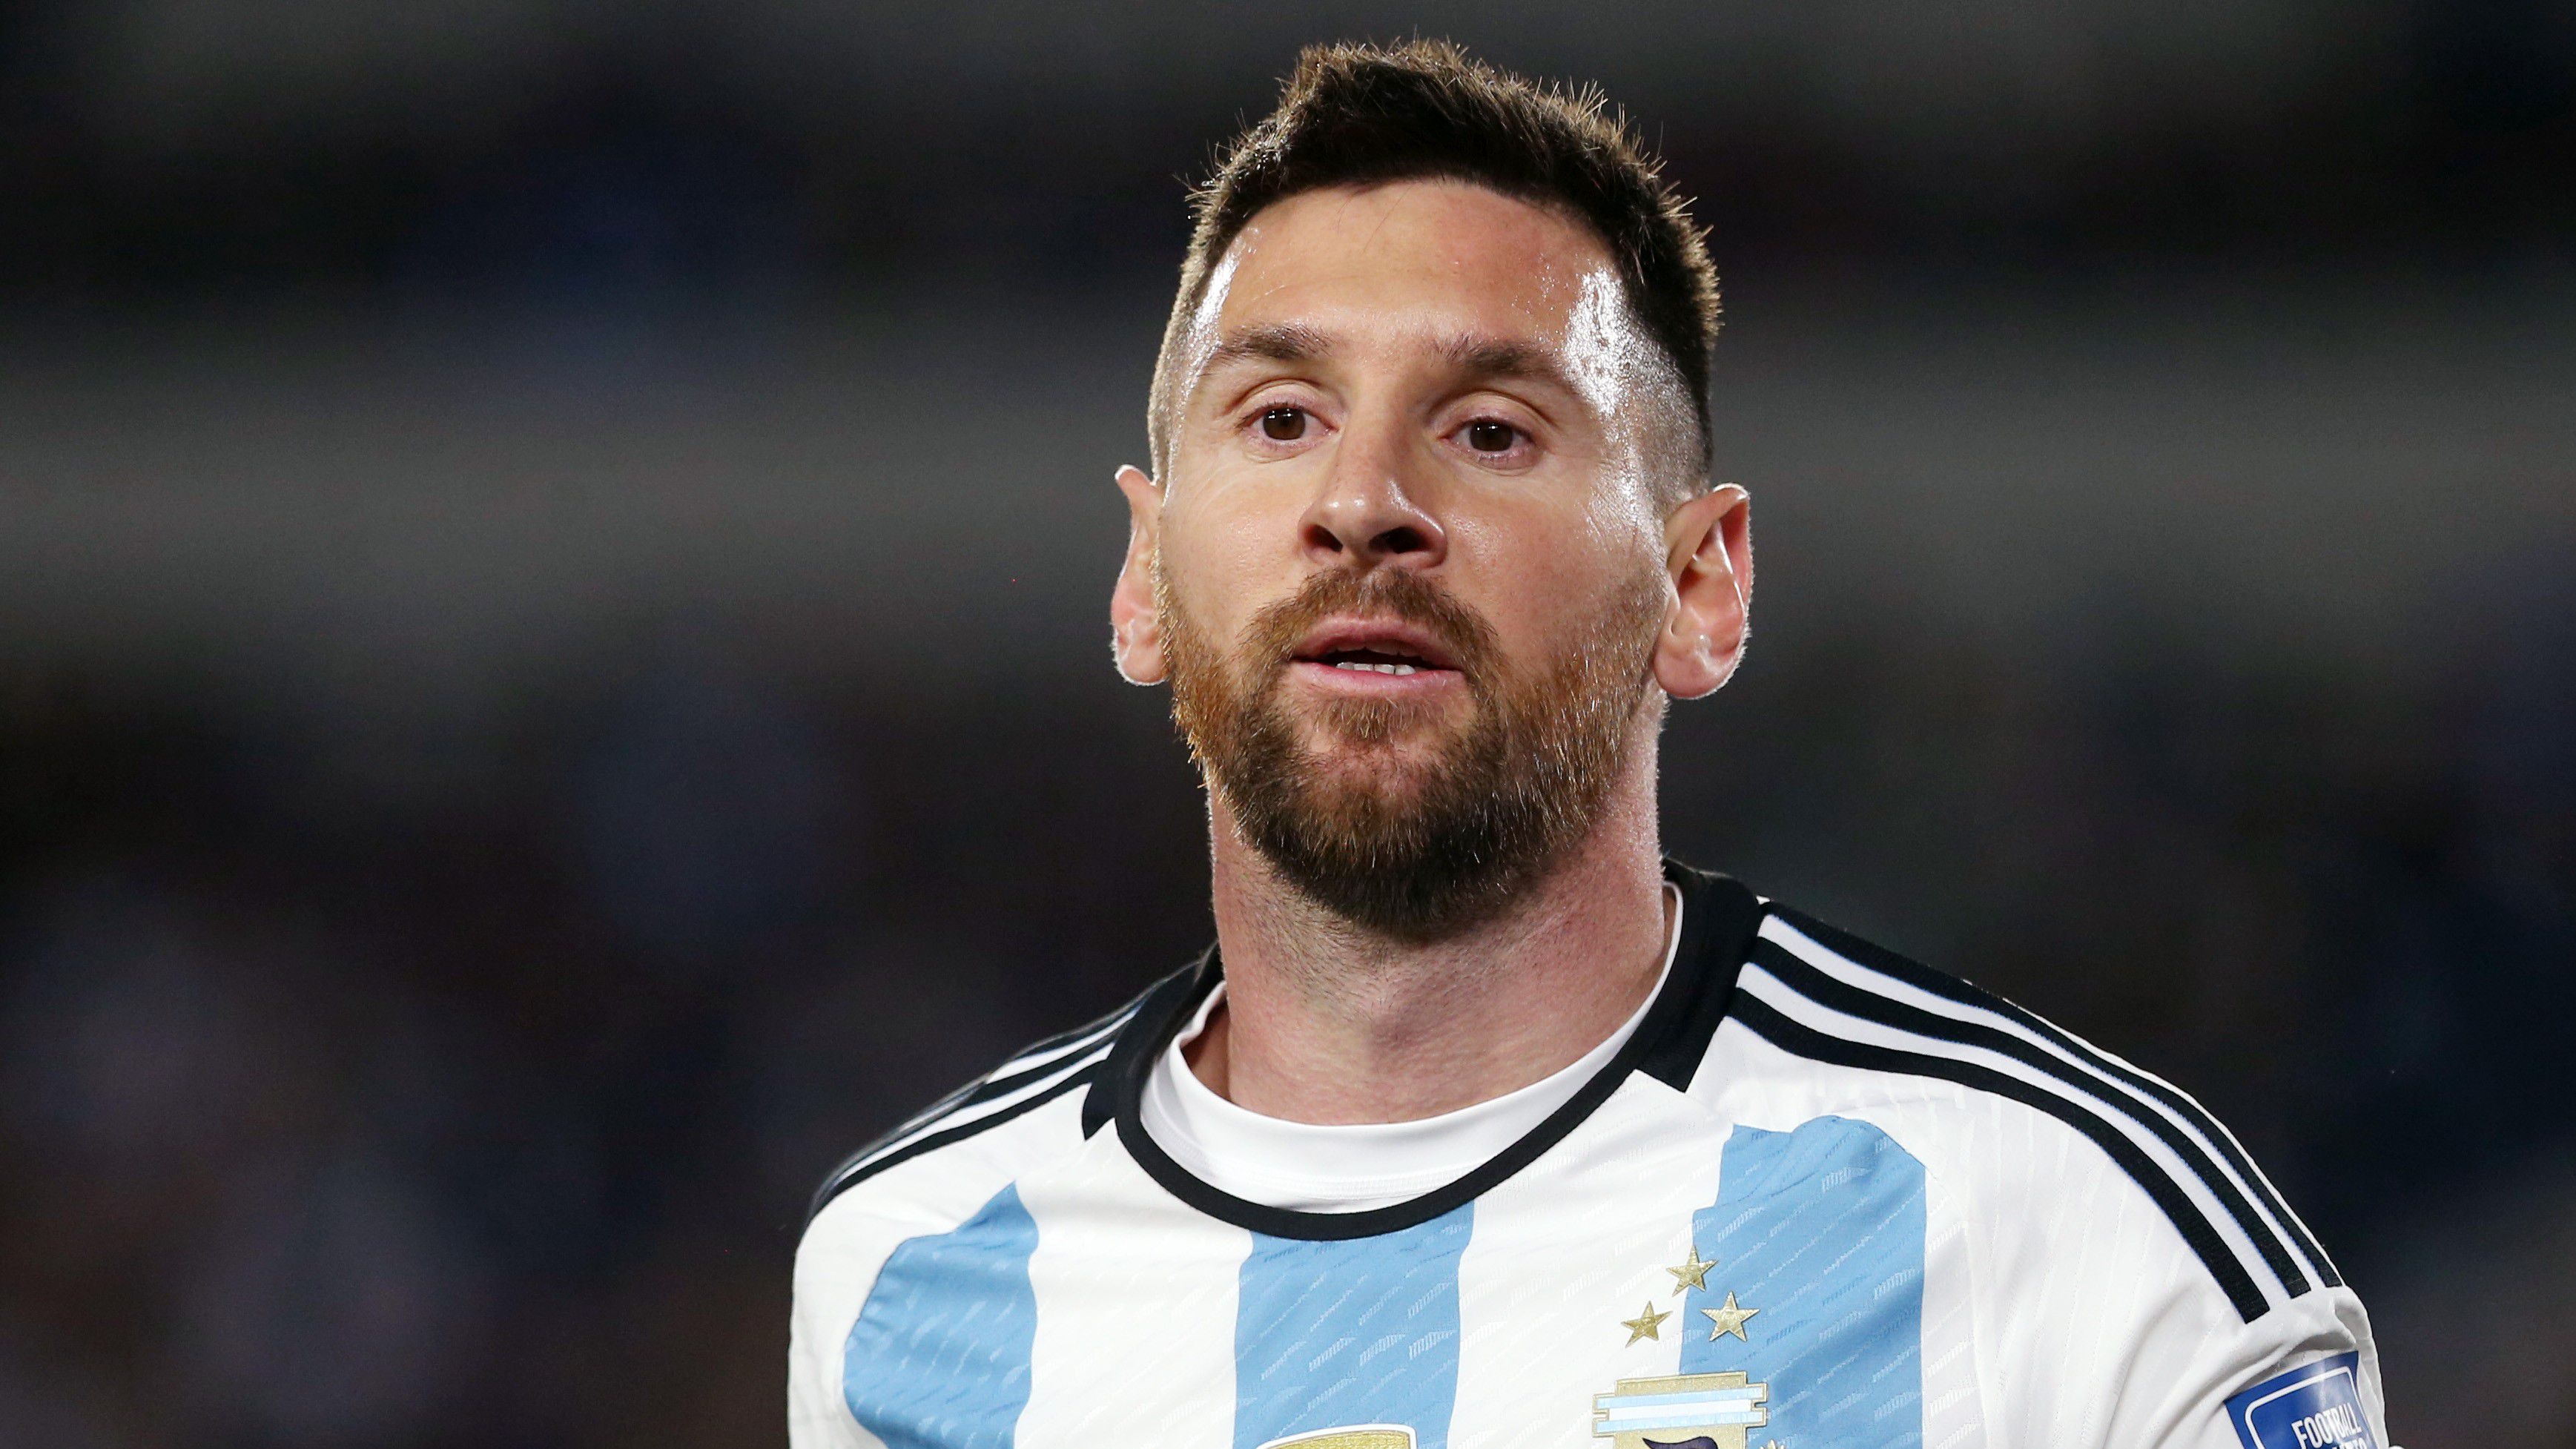 Ellenfele leköpte Messit, az argentin klasszis csattanós választ adott a játékosnak – videóval